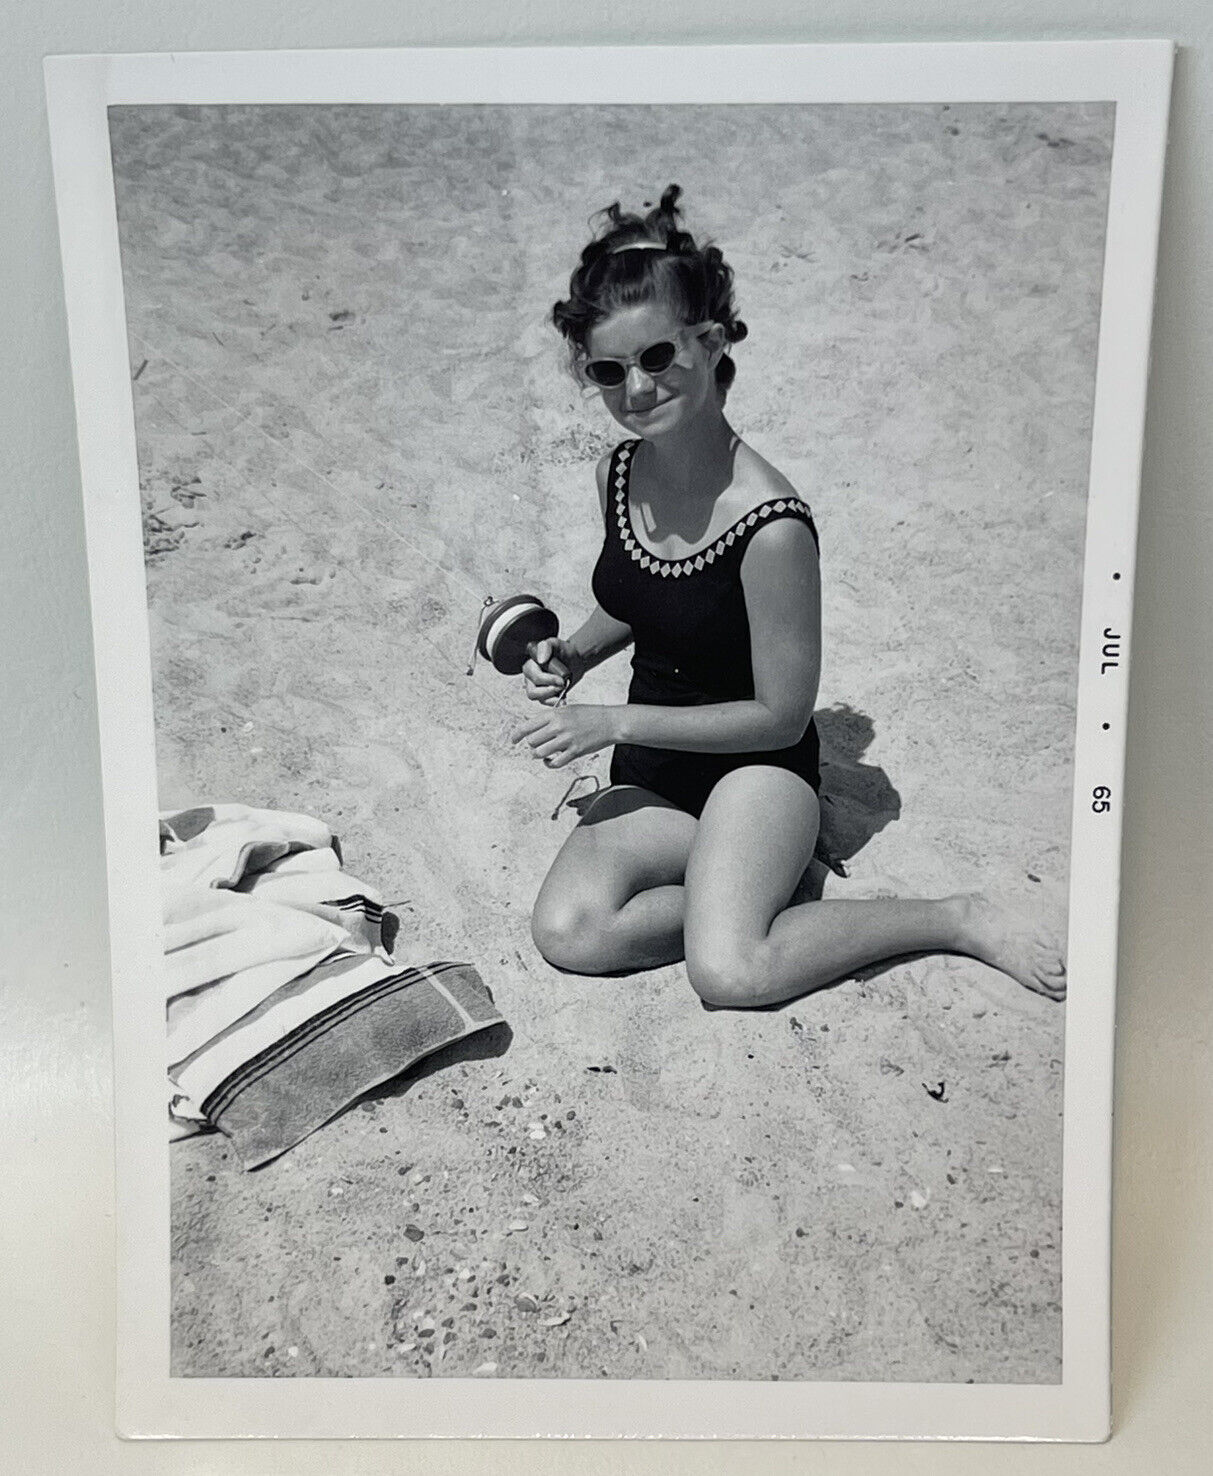 Vtg 1960s Snapshot Beach Bathing Beauty Cat Eye Sunglasses Holding Kite String